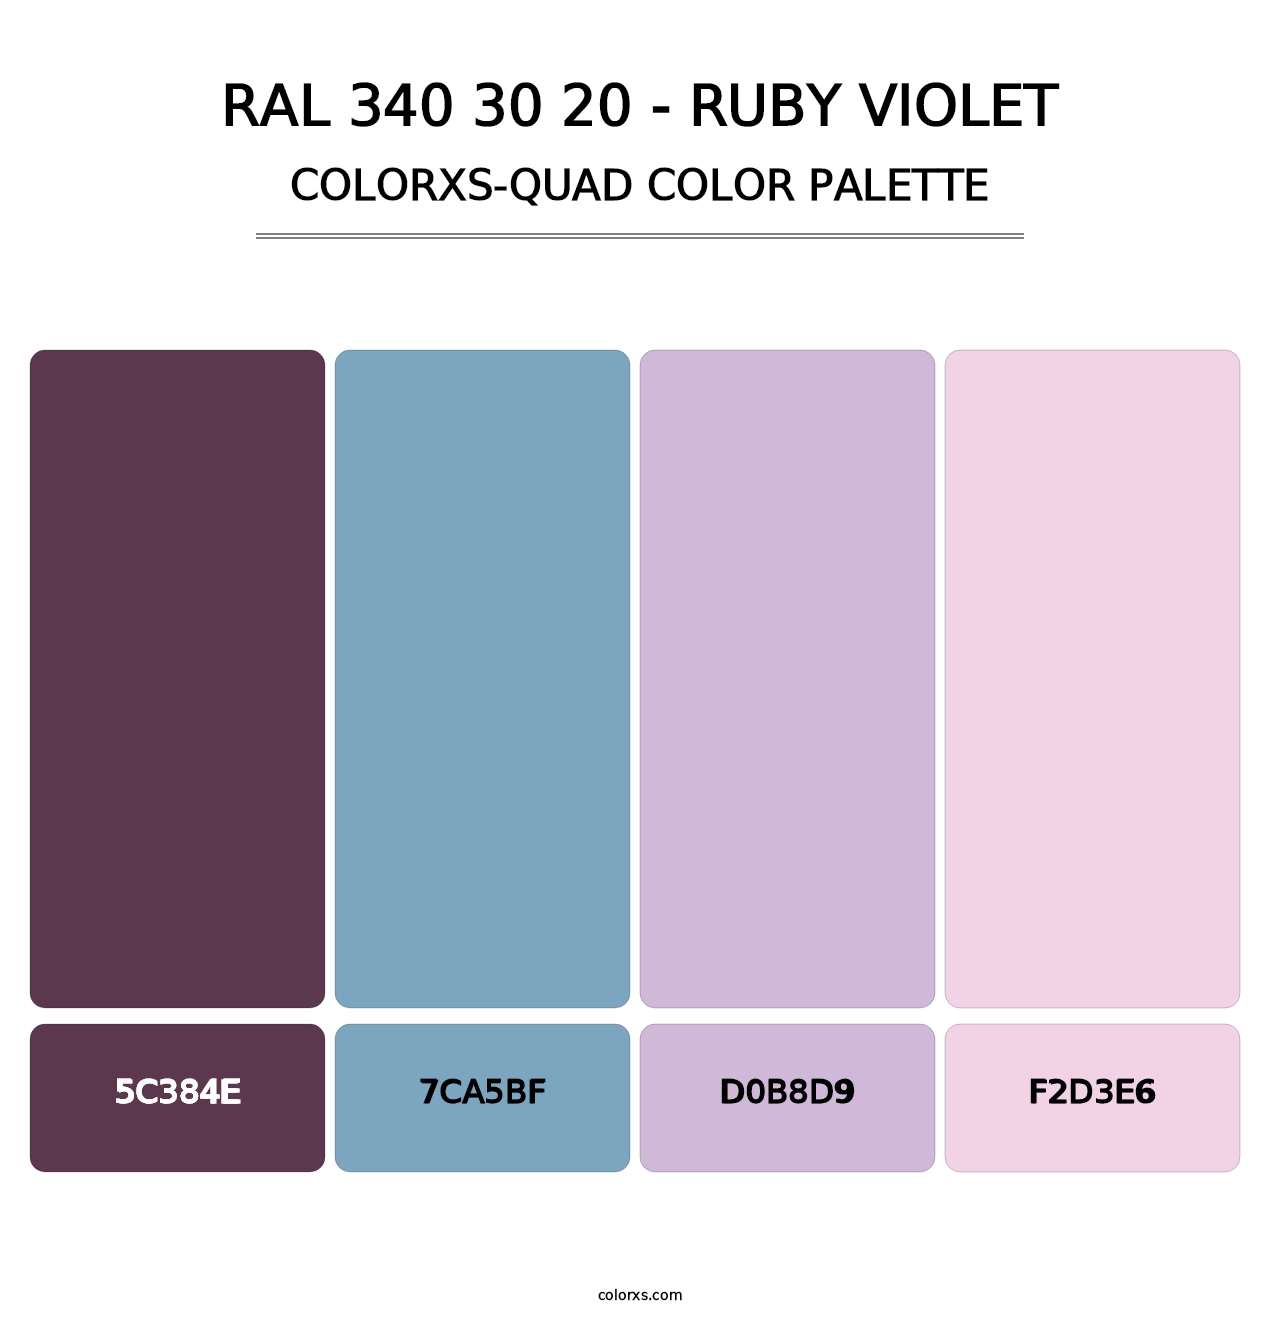 RAL 340 30 20 - Ruby Violet - Colorxs Quad Palette